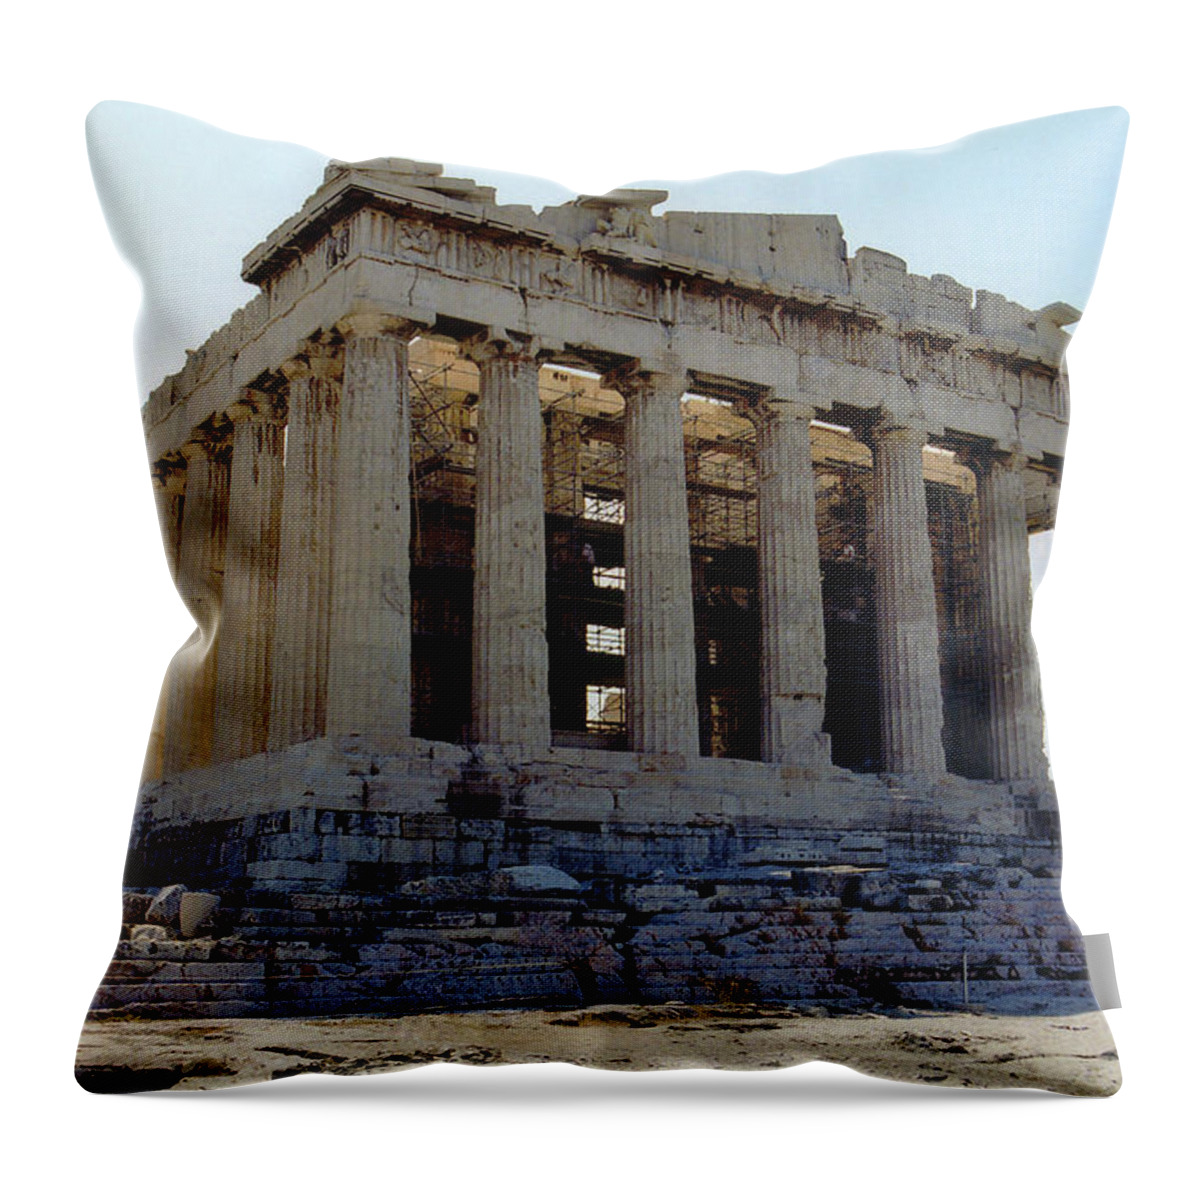 Parthenon Throw Pillow featuring the photograph Parthenon - Athens, Greece by Richard Krebs